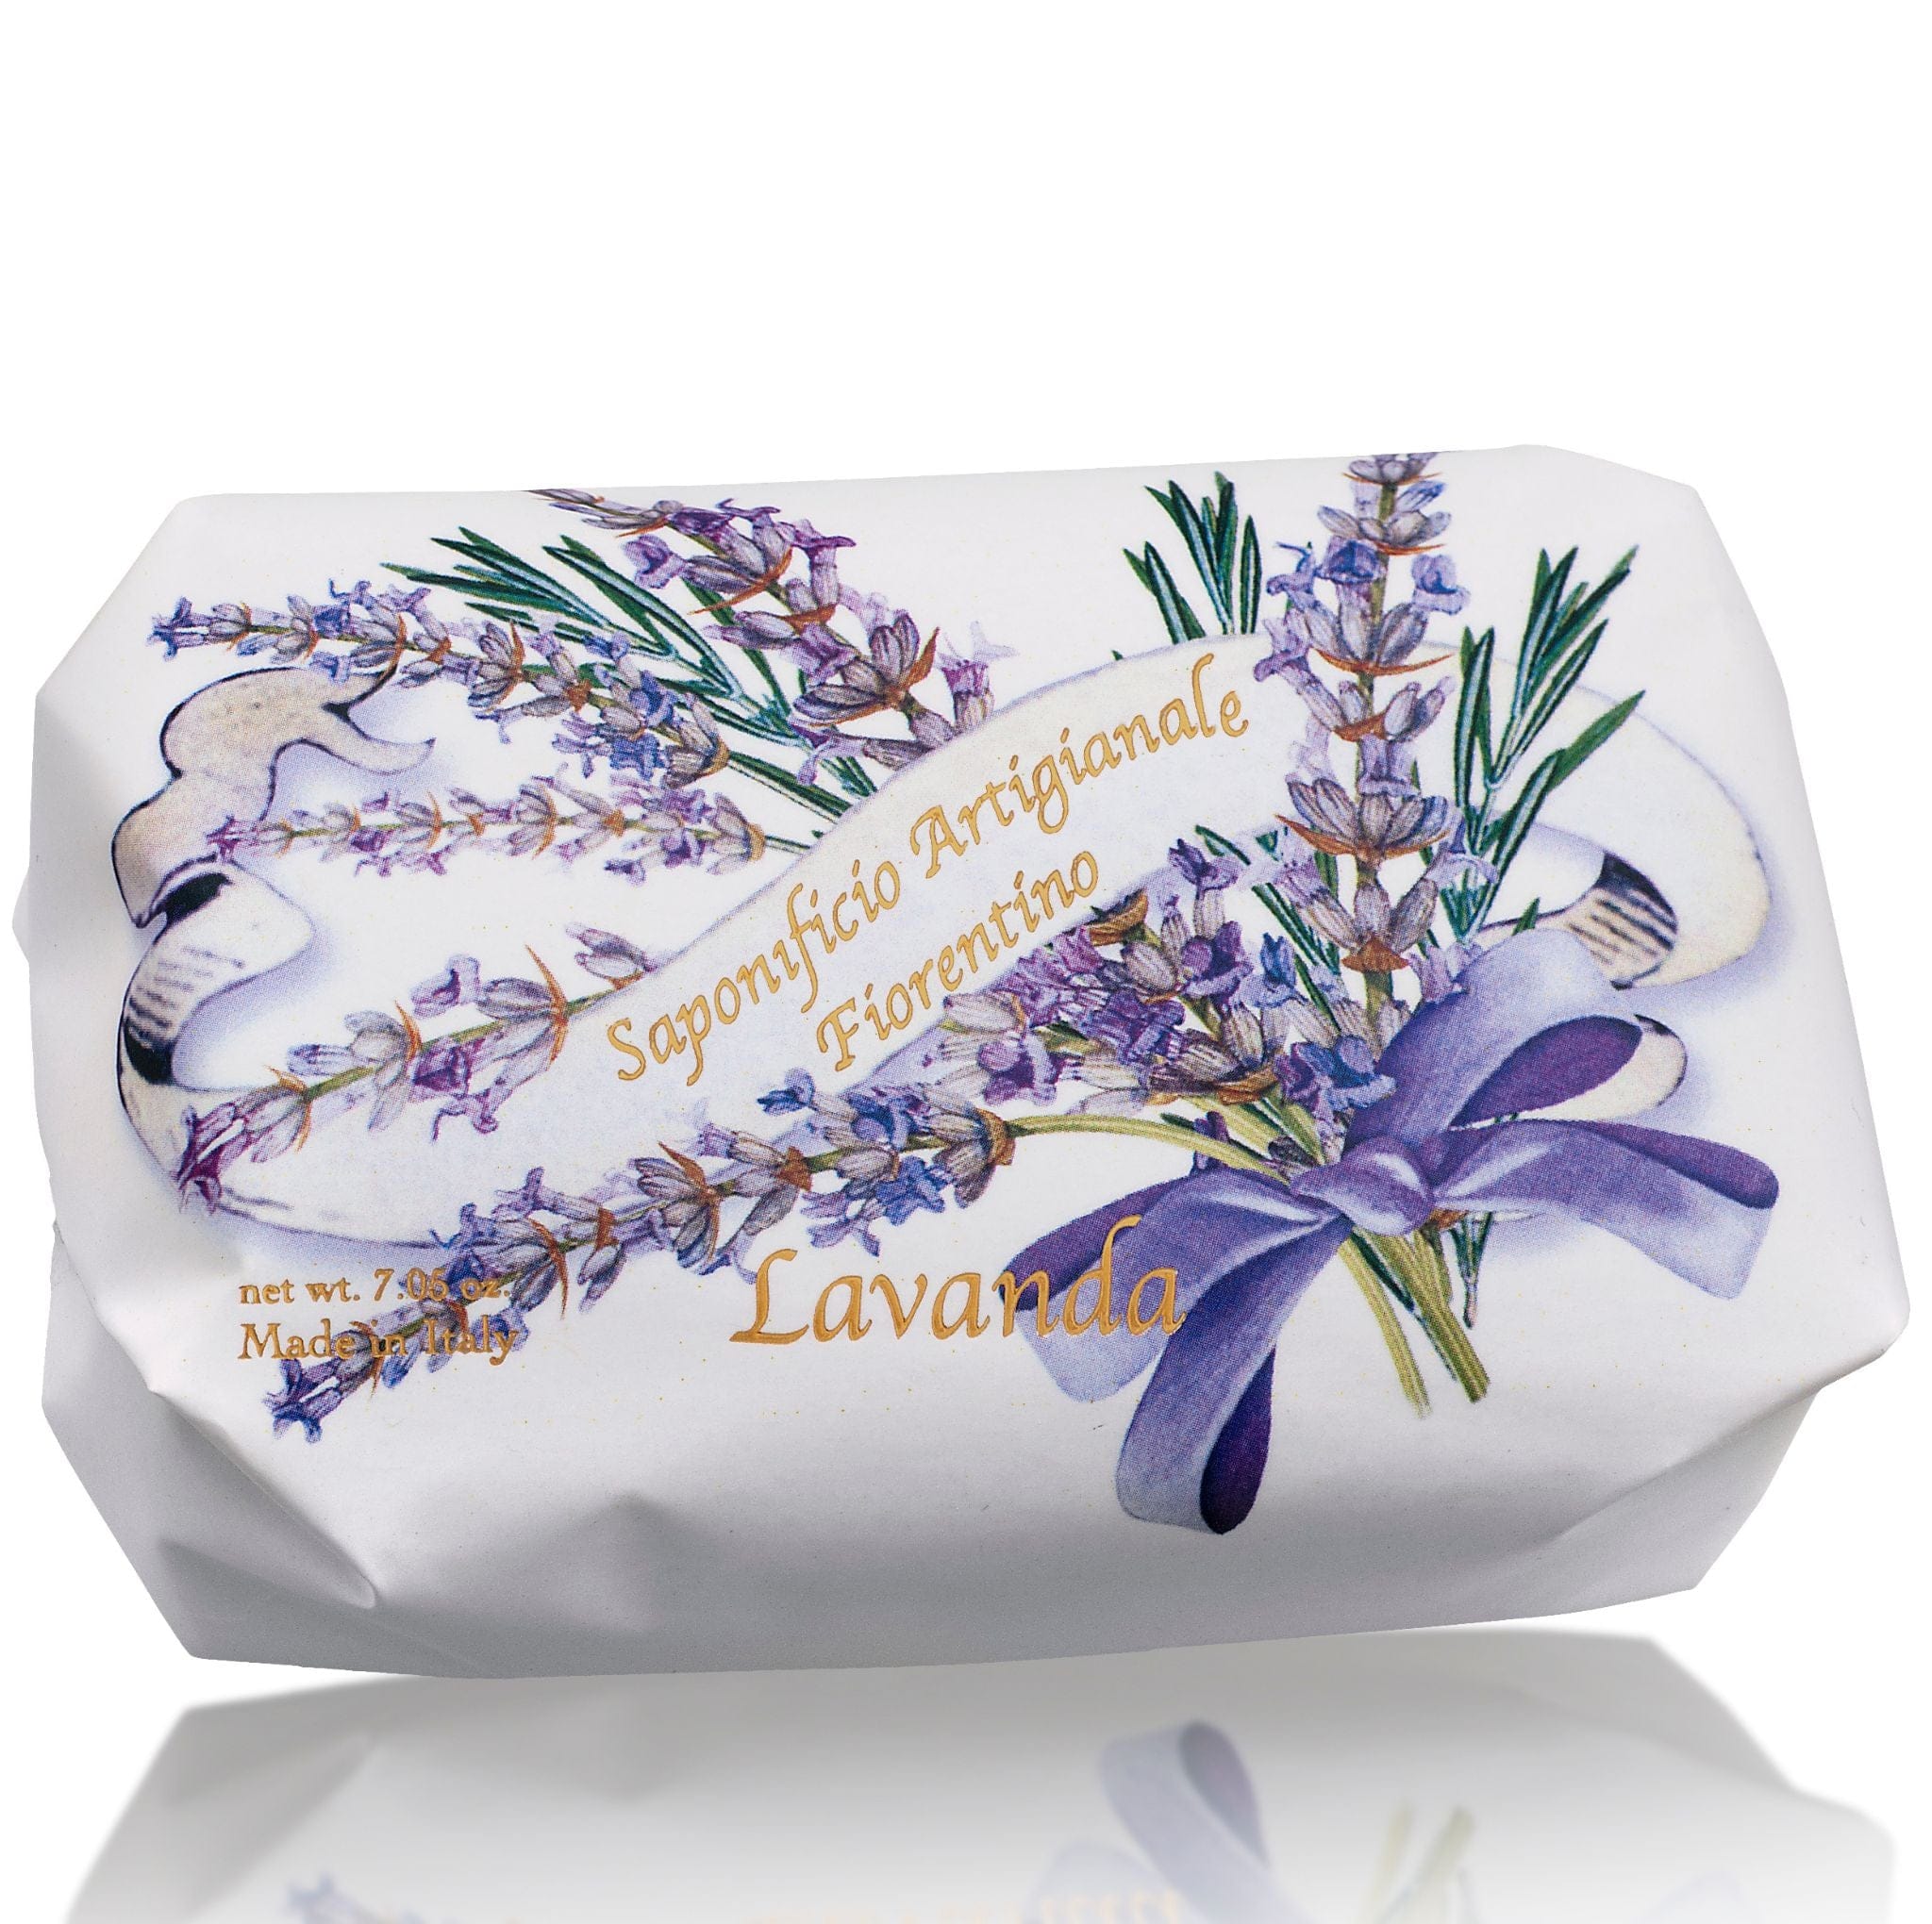 Saponificio Artigianale Fiorentino Bar soap Saponificio Artigianale Fiorentino Bouquet di Fiori 12 x 200g Voilet + Lavender + Lily of the Valley Brand